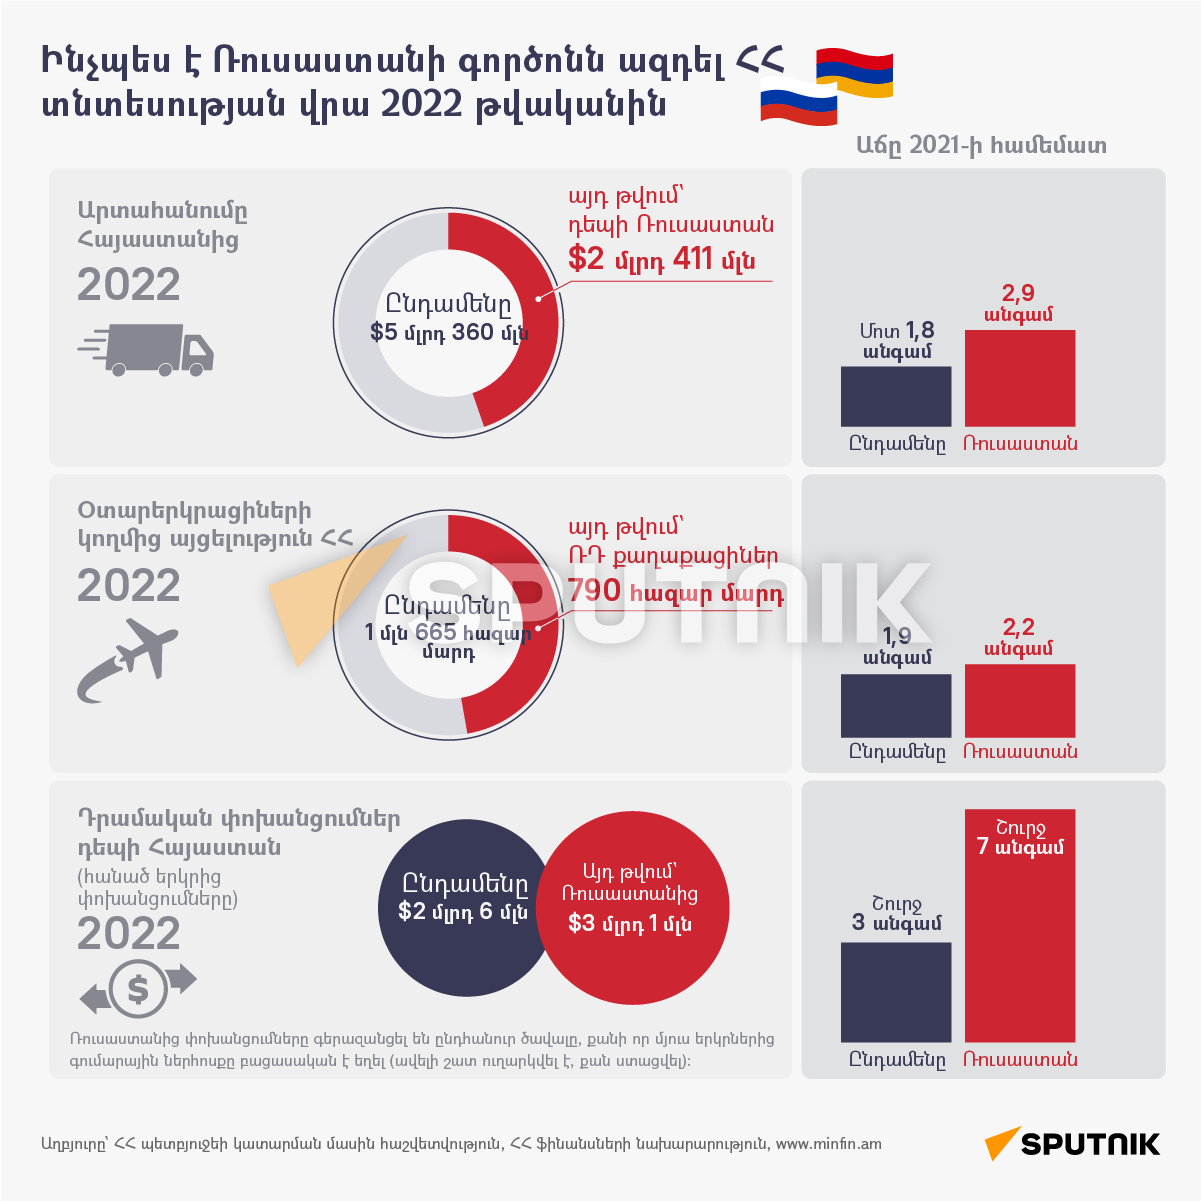 Ինչպես է Ռուսաստանի գործոնն ազդել ՀՀ տնտեսության  վրա 2022 թվականին - Sputnik Արմենիա